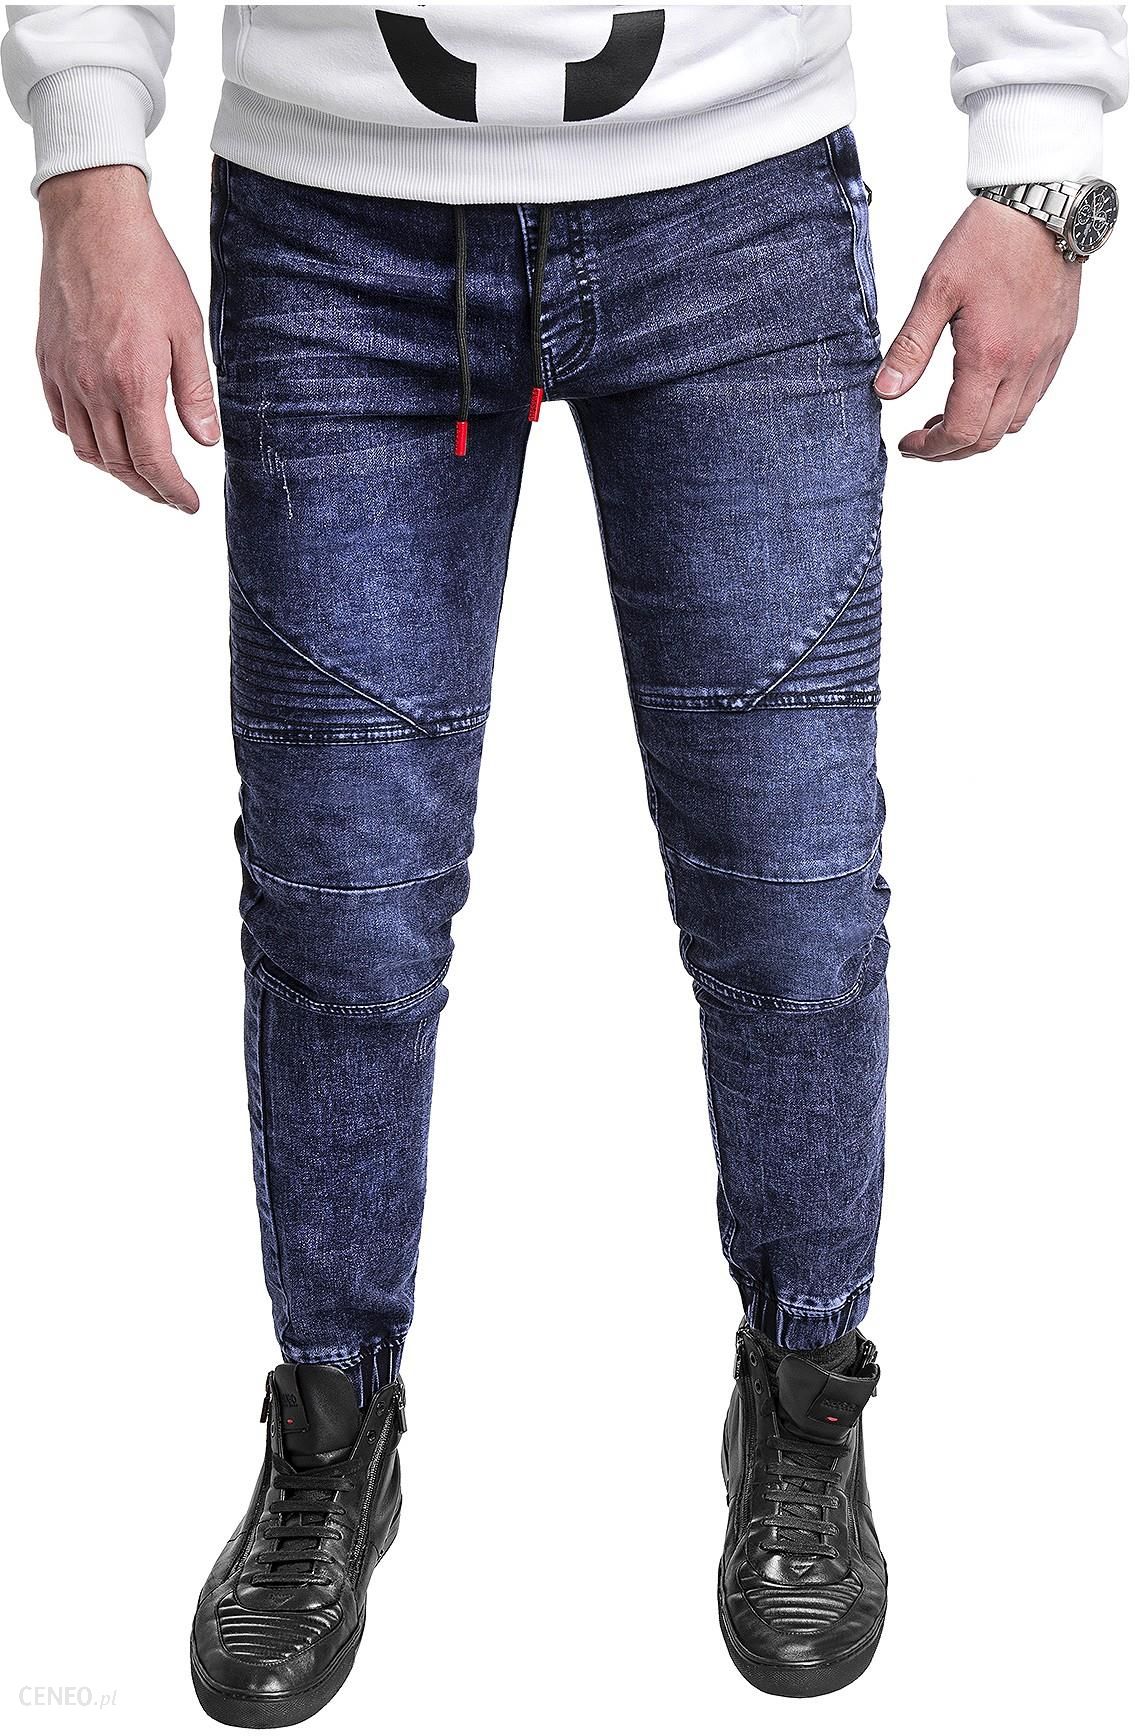  Risardi Spodnie jeansowe męskie joggery HY621 - niebieskie